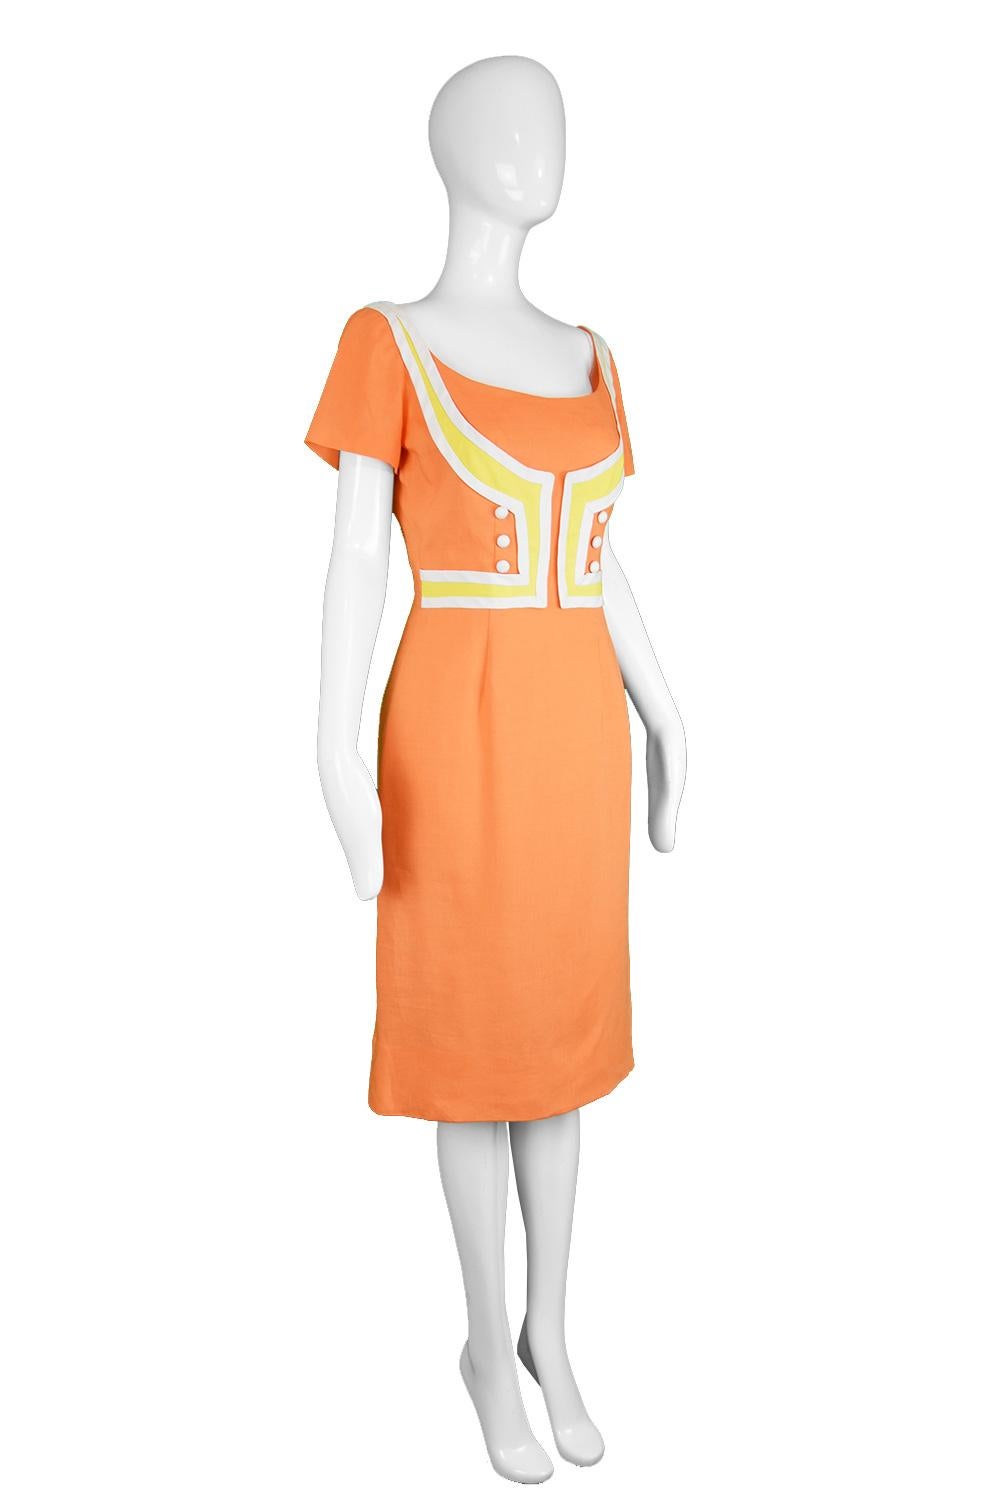 Oleg Cassini Vintage Orange, White & Yellow Linen Short Sleeve Mod Dress, 1960s For Sale 1